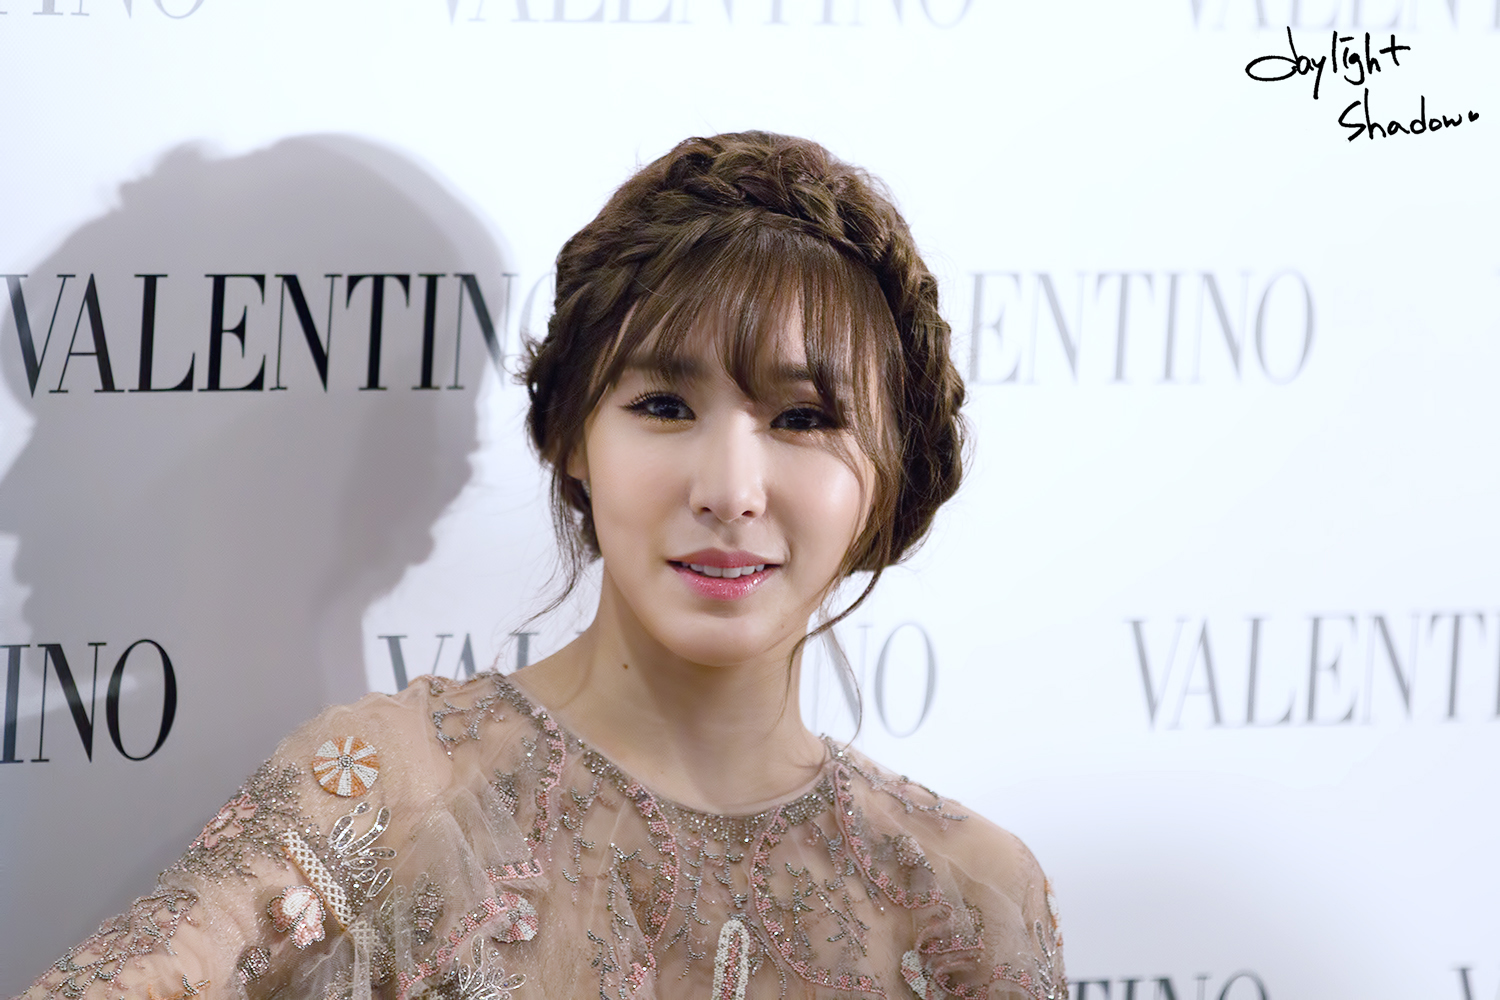 [PIC][04-02-2015]Tiffany khởi hành đi Hồng Kông để tham dự sự kện "Valentino Flagship Grand Opening" vào trưa nay - Page 6 25193948551FC90E368BC0